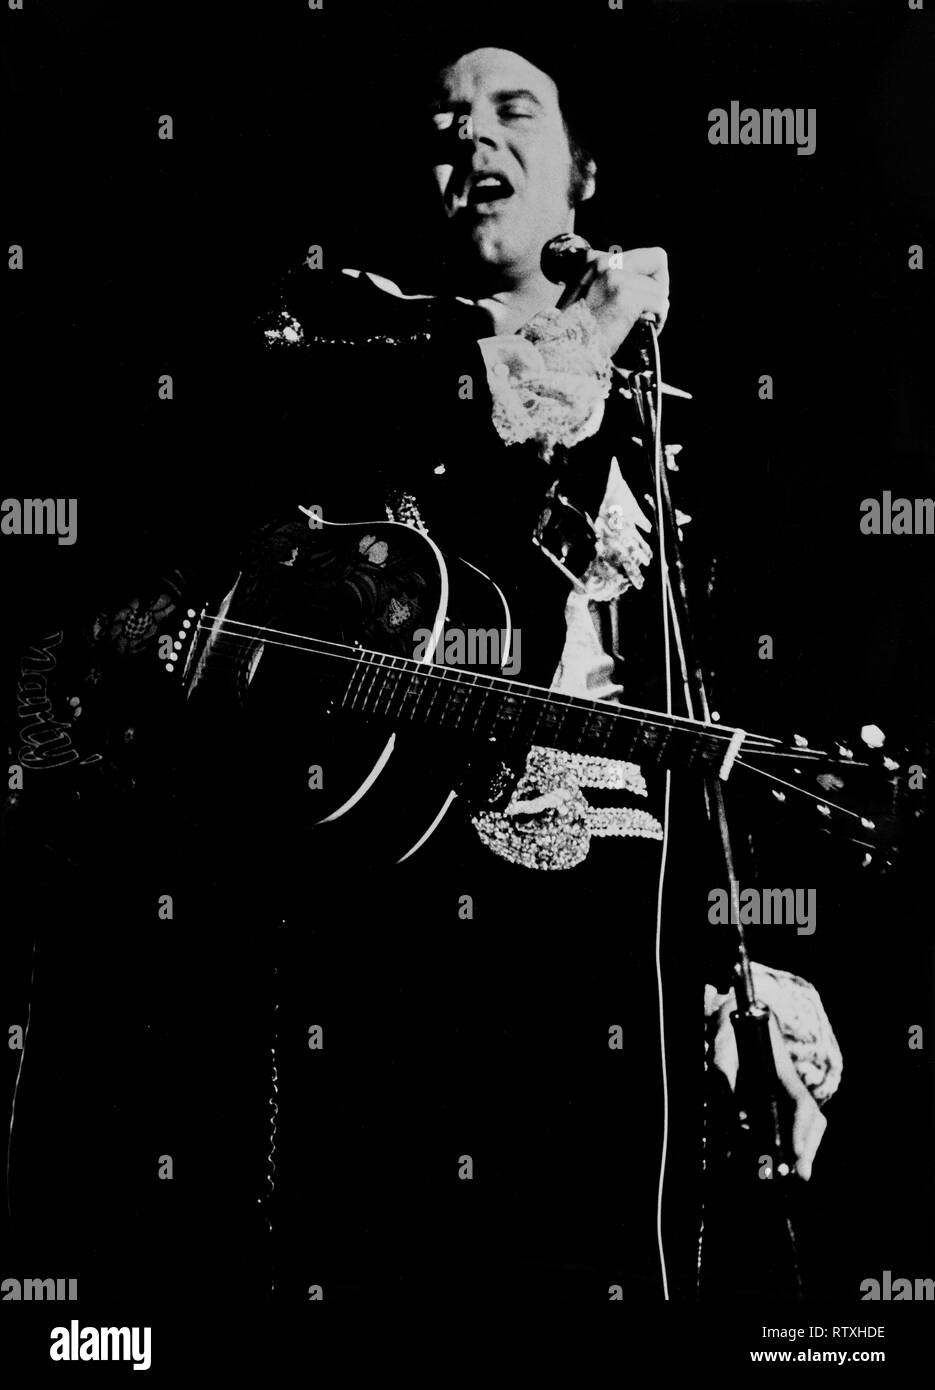 Marty Wilde canto presso la taverna del circo, Grays Essex, Inghilterra in circa 1974 Marty Wilde, MBE (nato Reginald Leonard Smith; 15 aprile 1939) è un cantante inglese e cantautore. Egli è stato tra la prima generazione di british pop star per emulare American rock and roll, ed è il padre di cantanti pop Ricky, Kim e Roxanne Wilde. Foto Stock